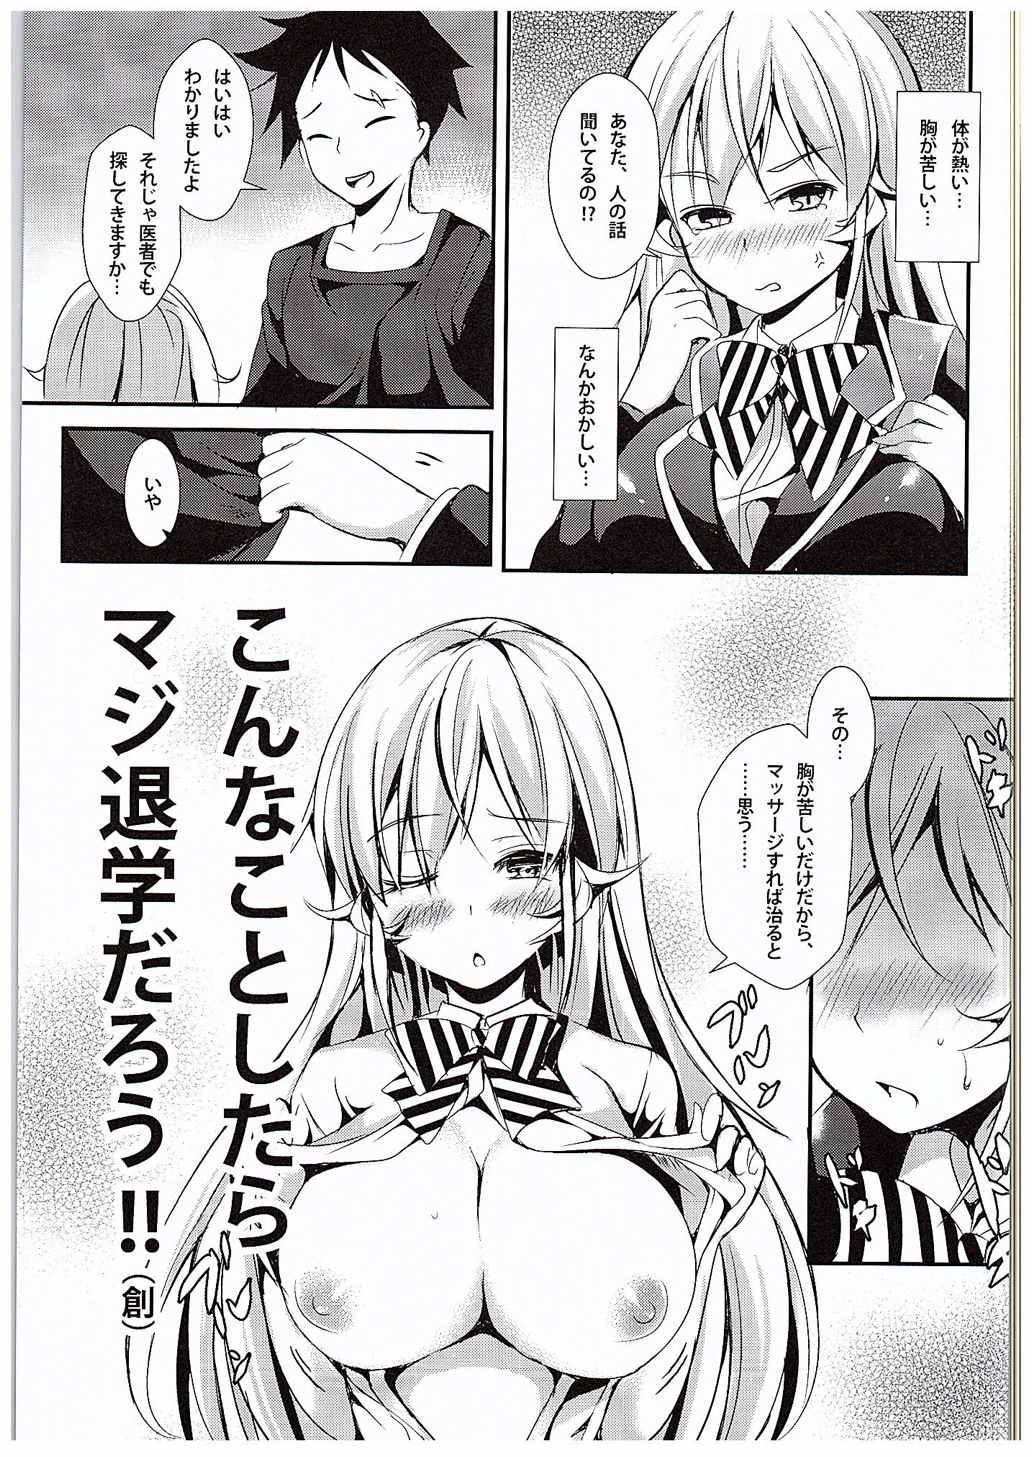 Lez Hardcore Erina to Shoujo Manga - Shokugeki no soma Gay Orgy - Page 6